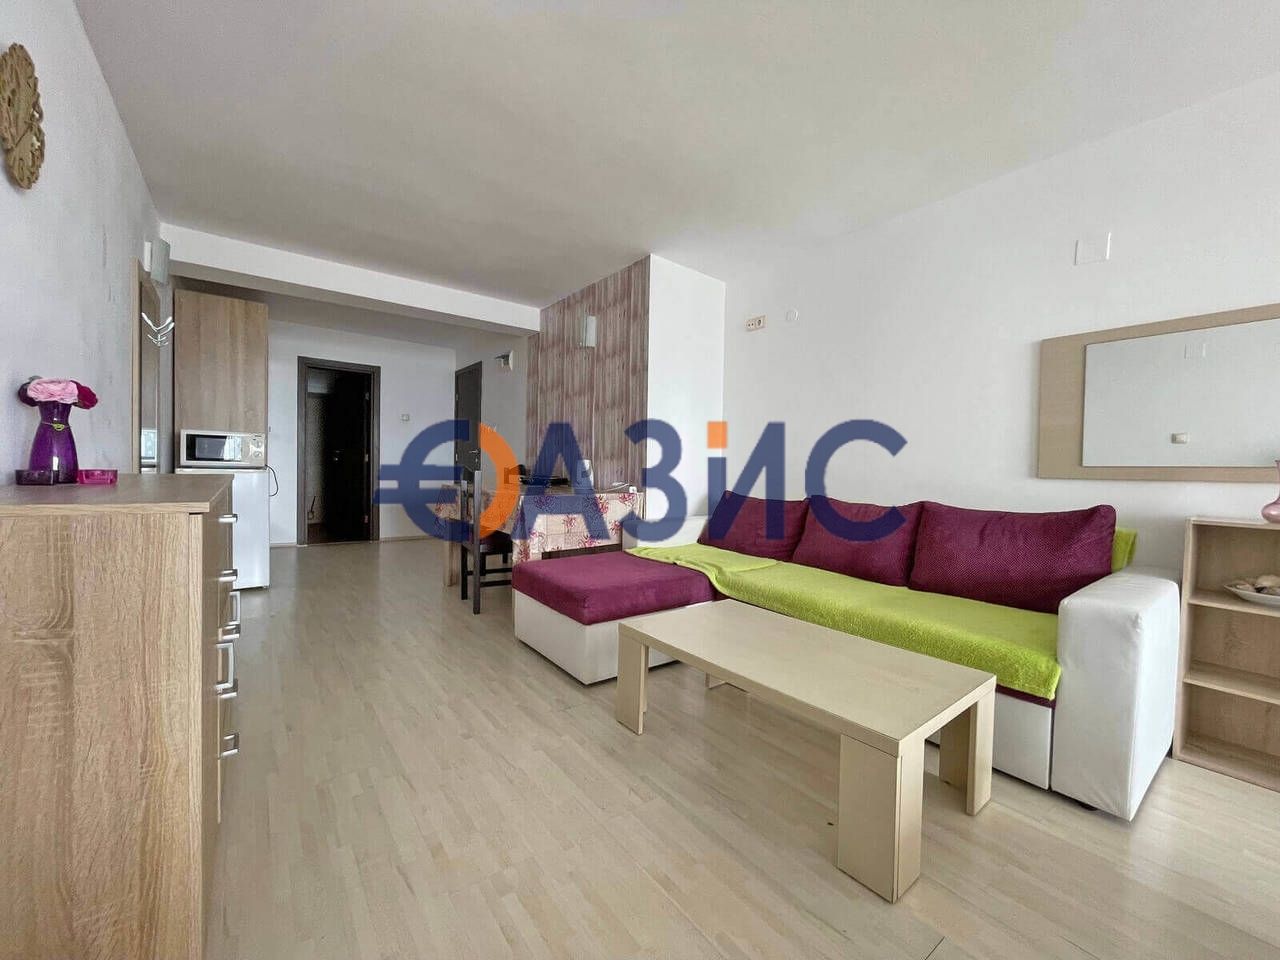 Apartment in Sozopol, Bulgaria, 44 sq.m - picture 1